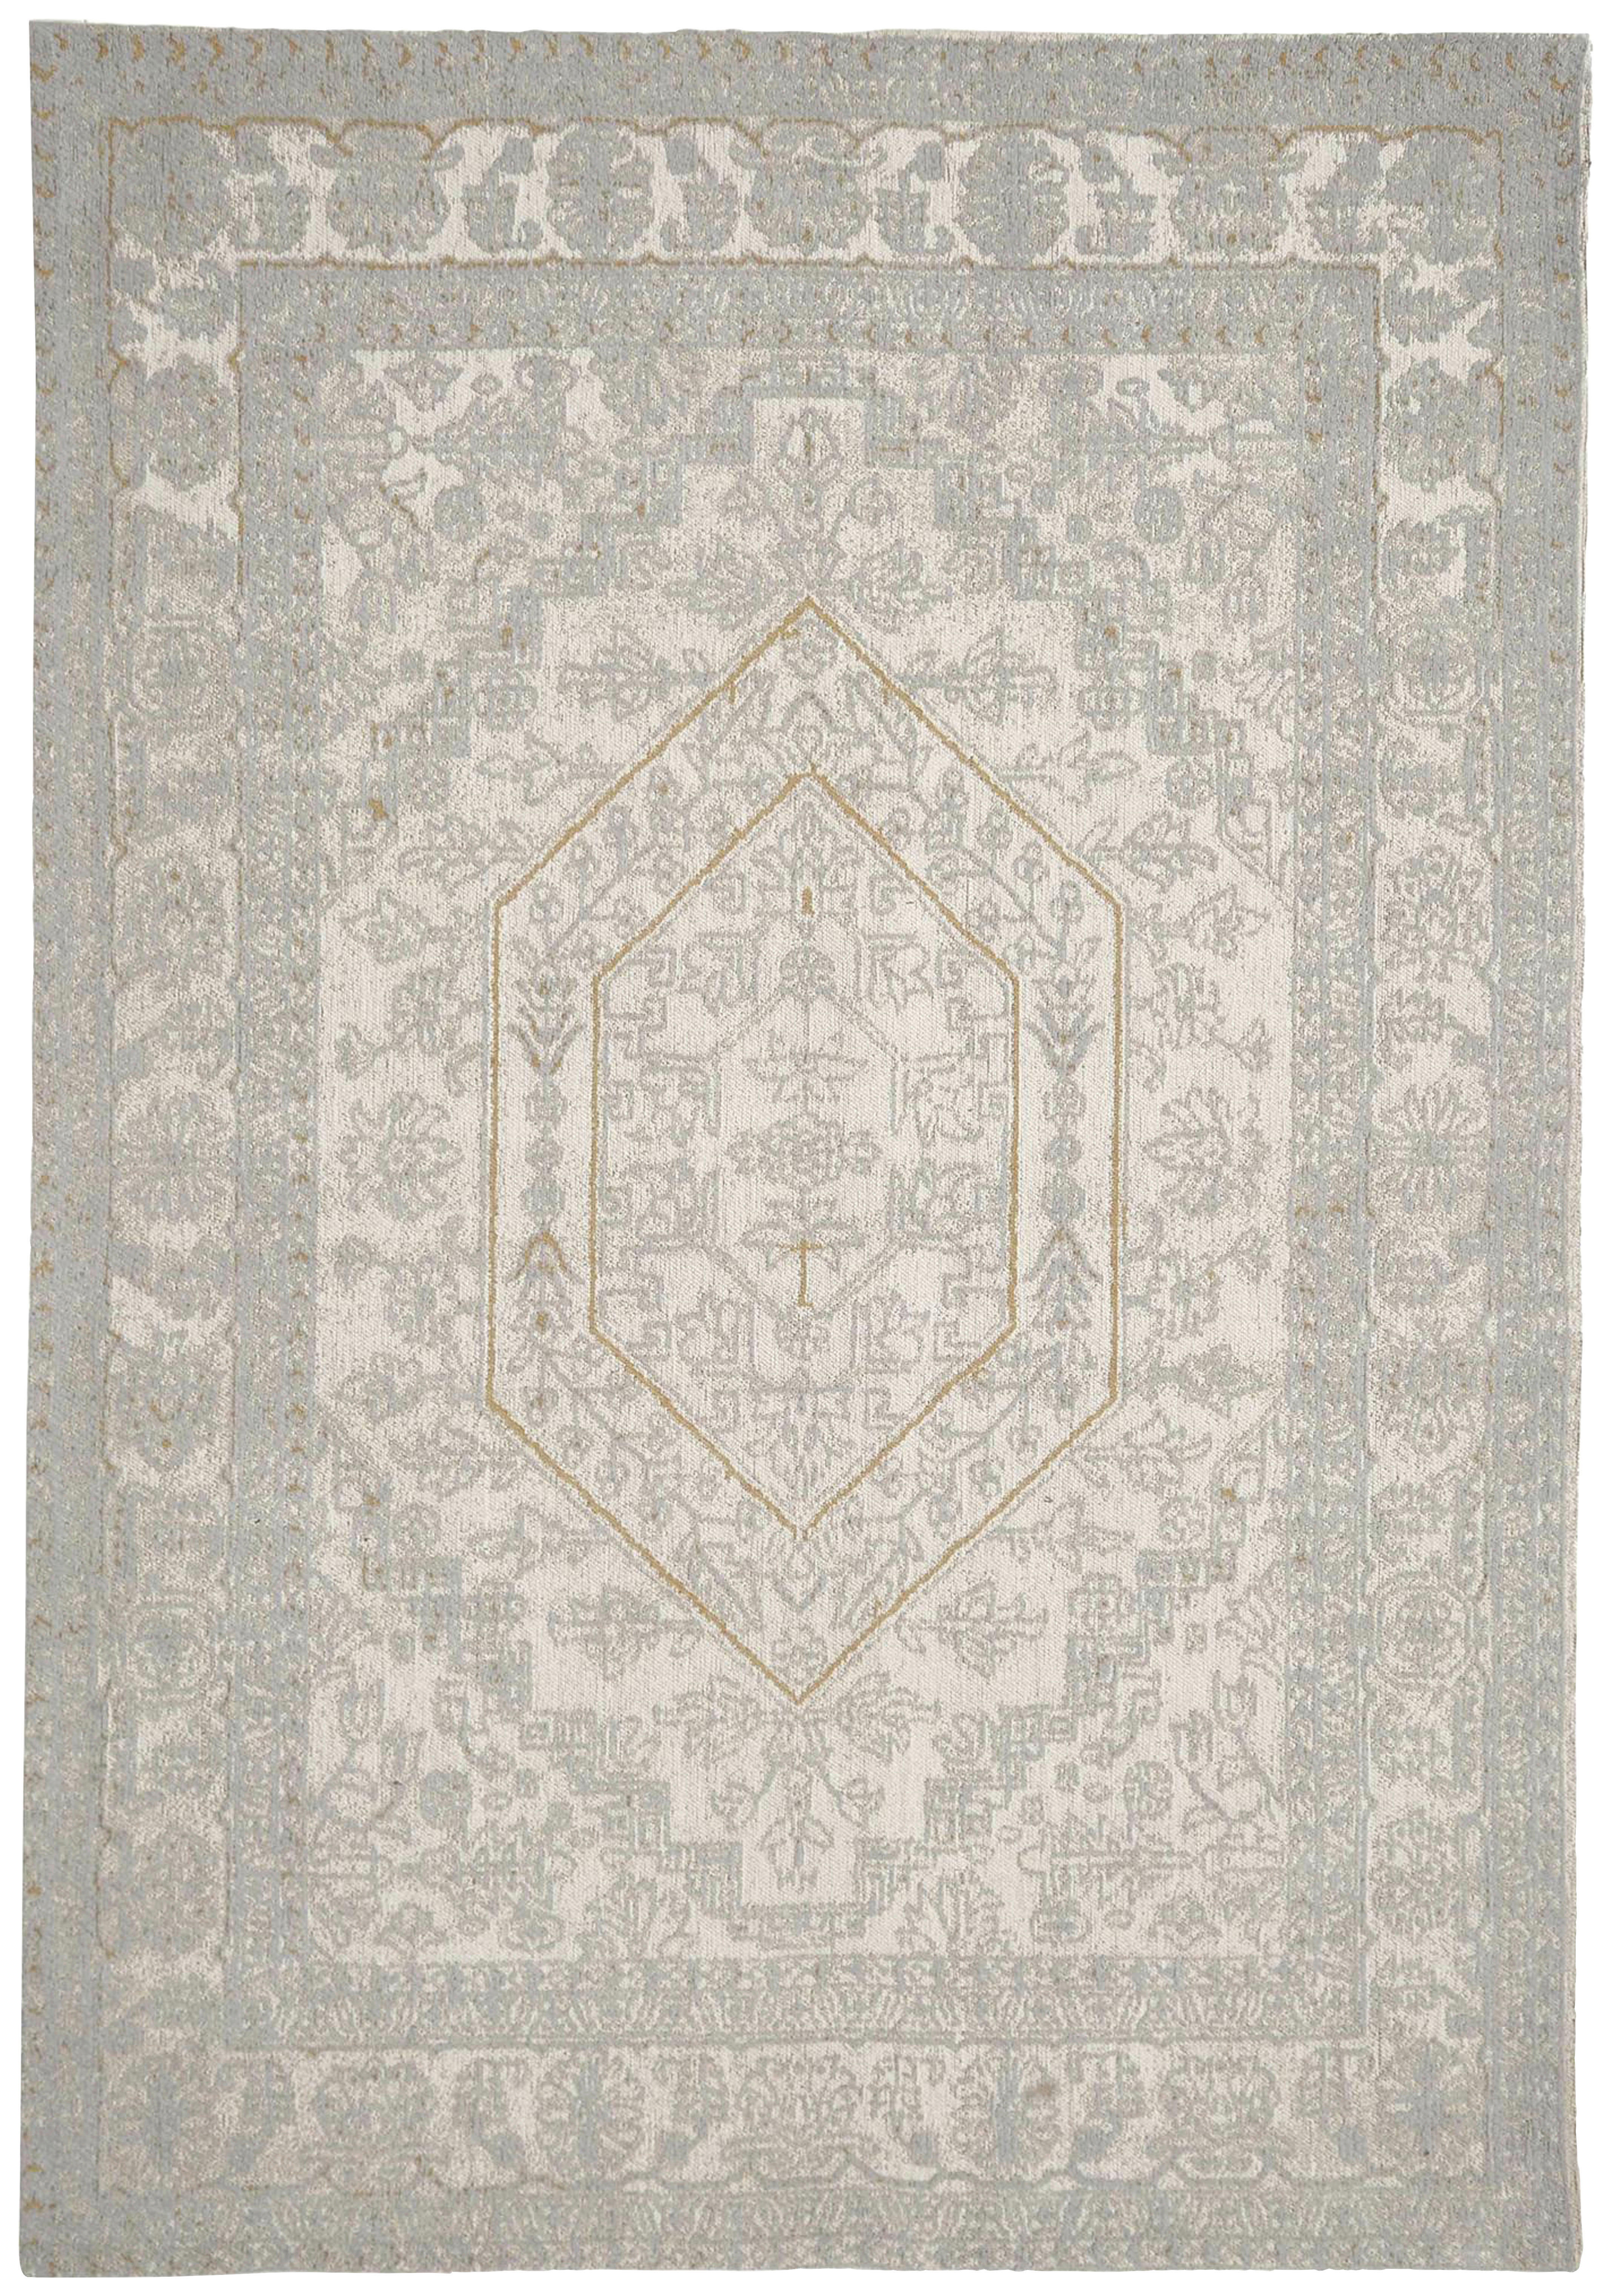 TEPPICH 160/230 cm  - Blau/Weiß, Basics, Textil (160/230cm)